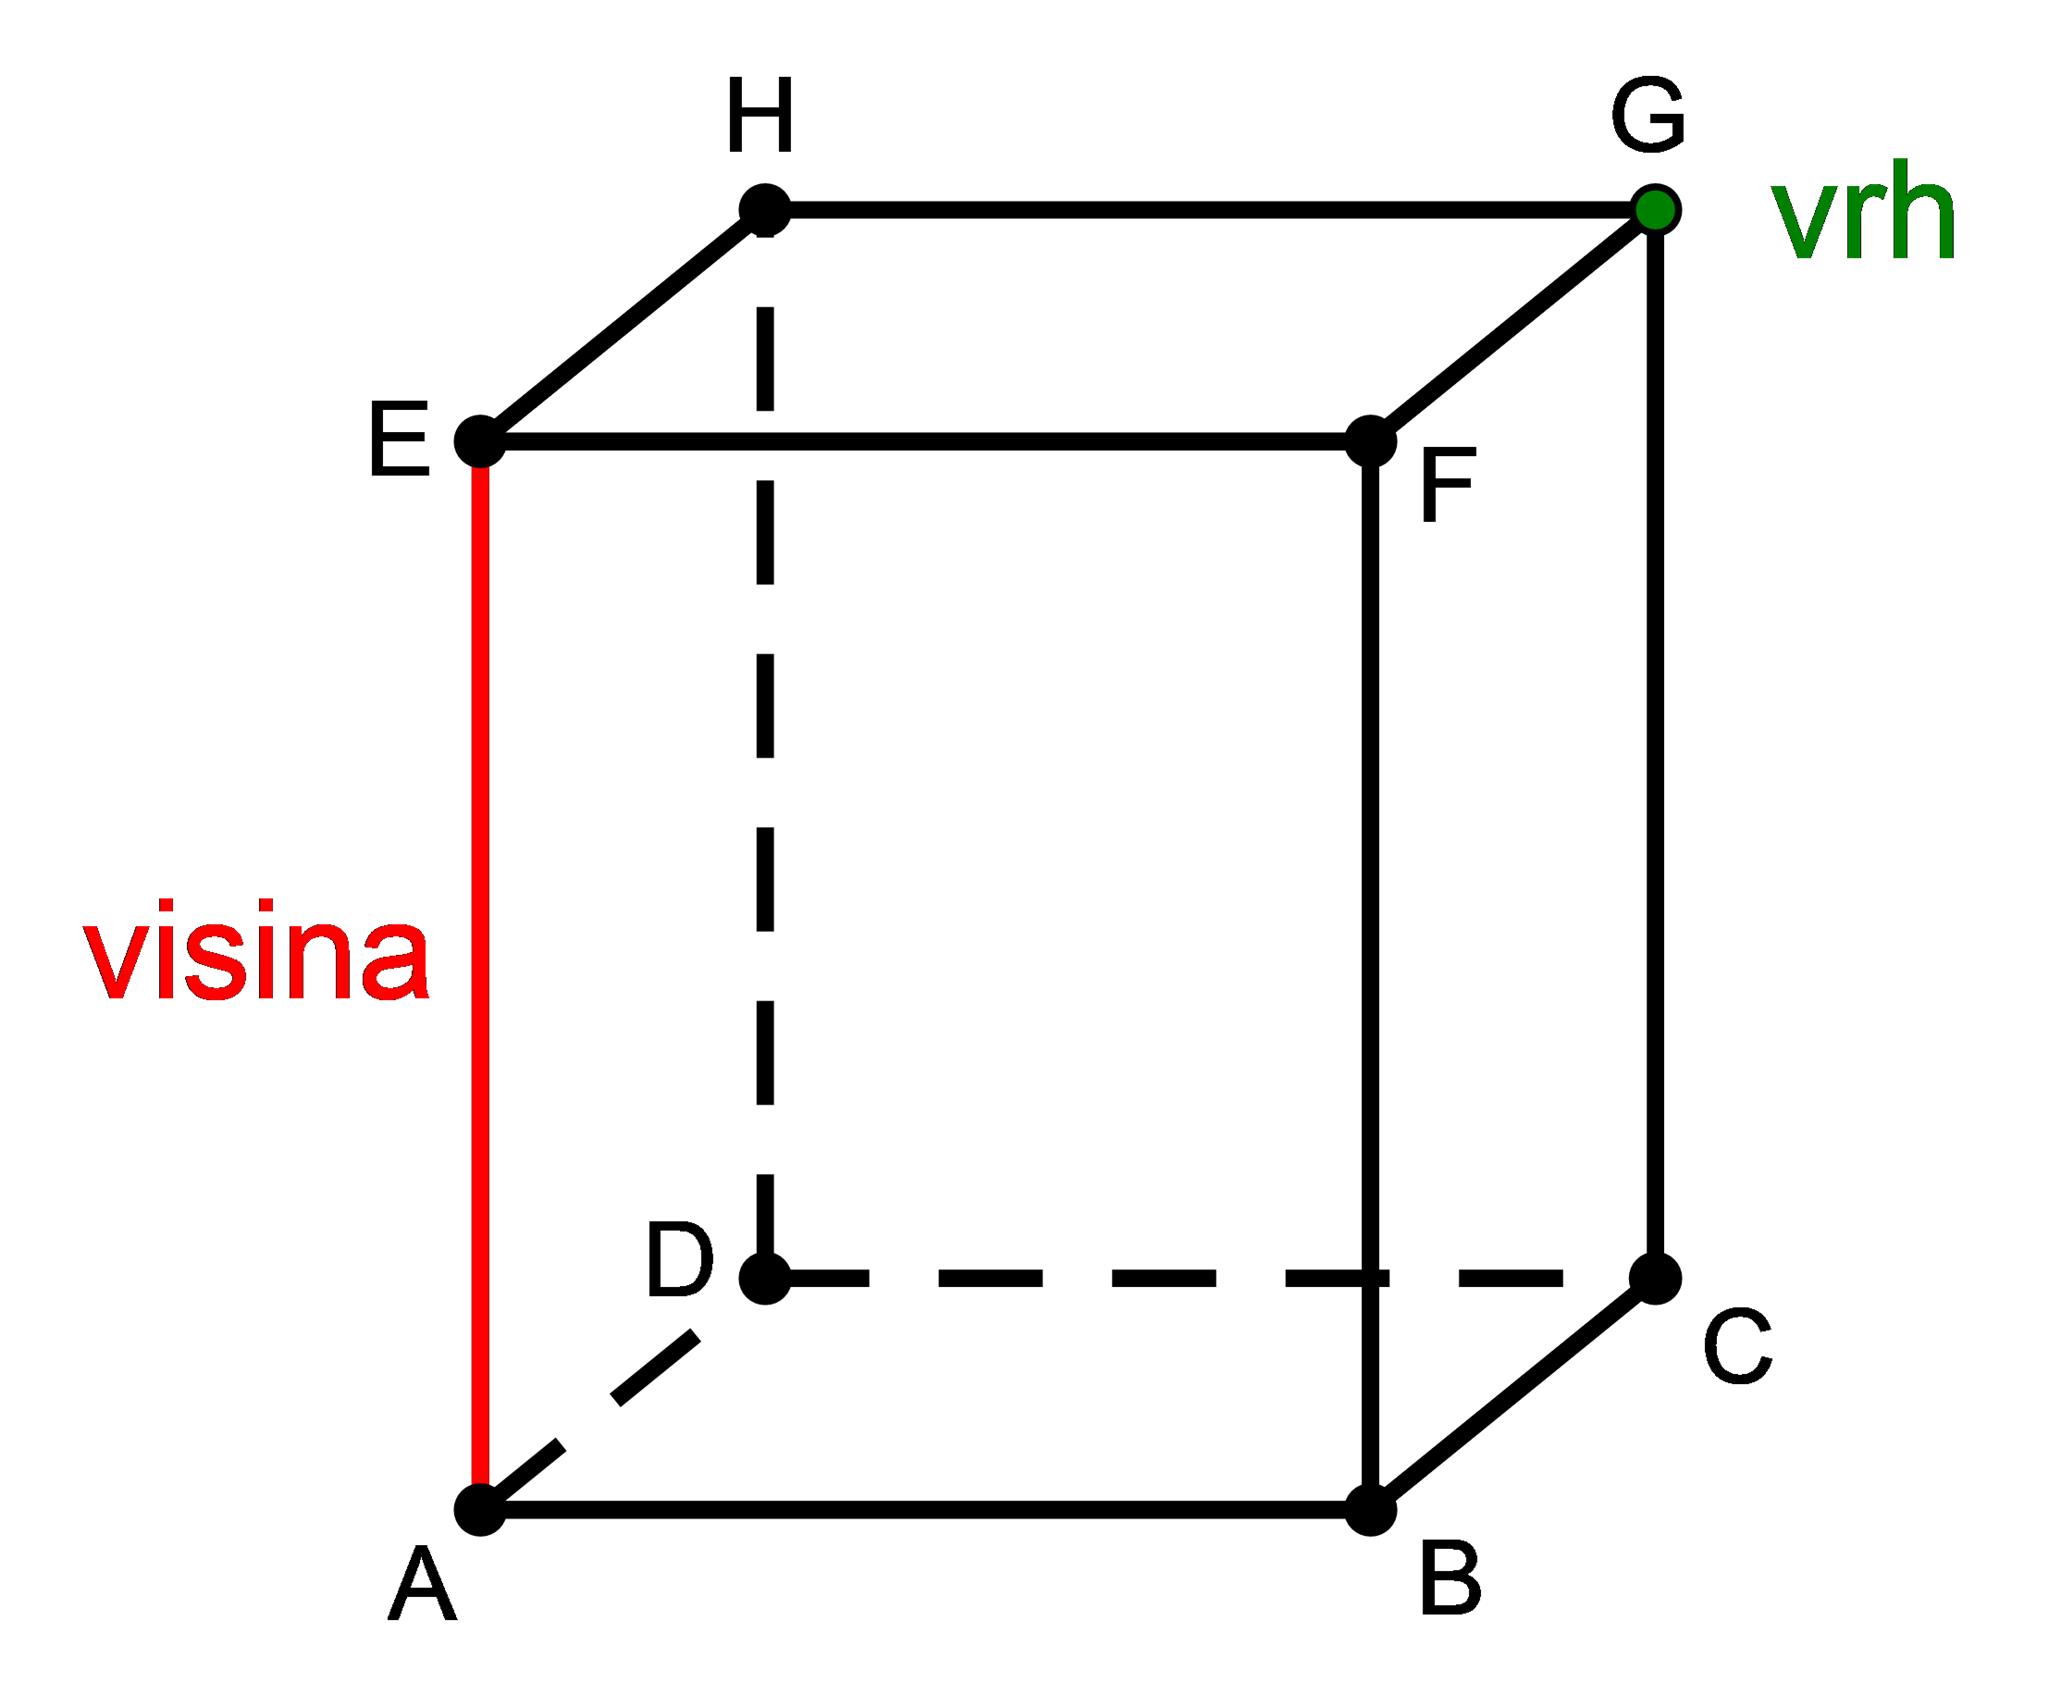 Slika prikazuje prizmu na kojoj je istaknuta visina i vrh.